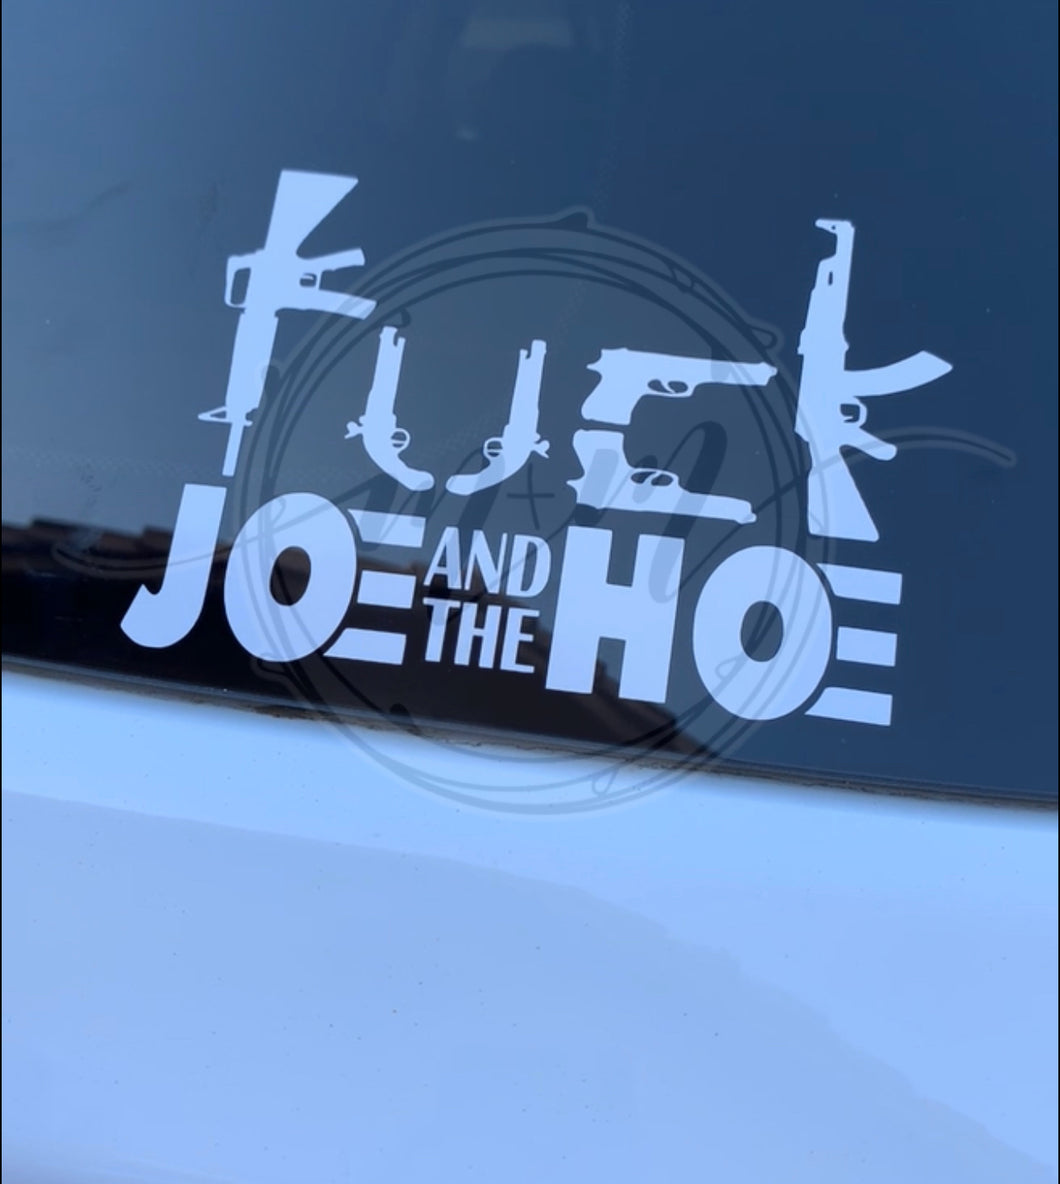 FK Joe & the H0e